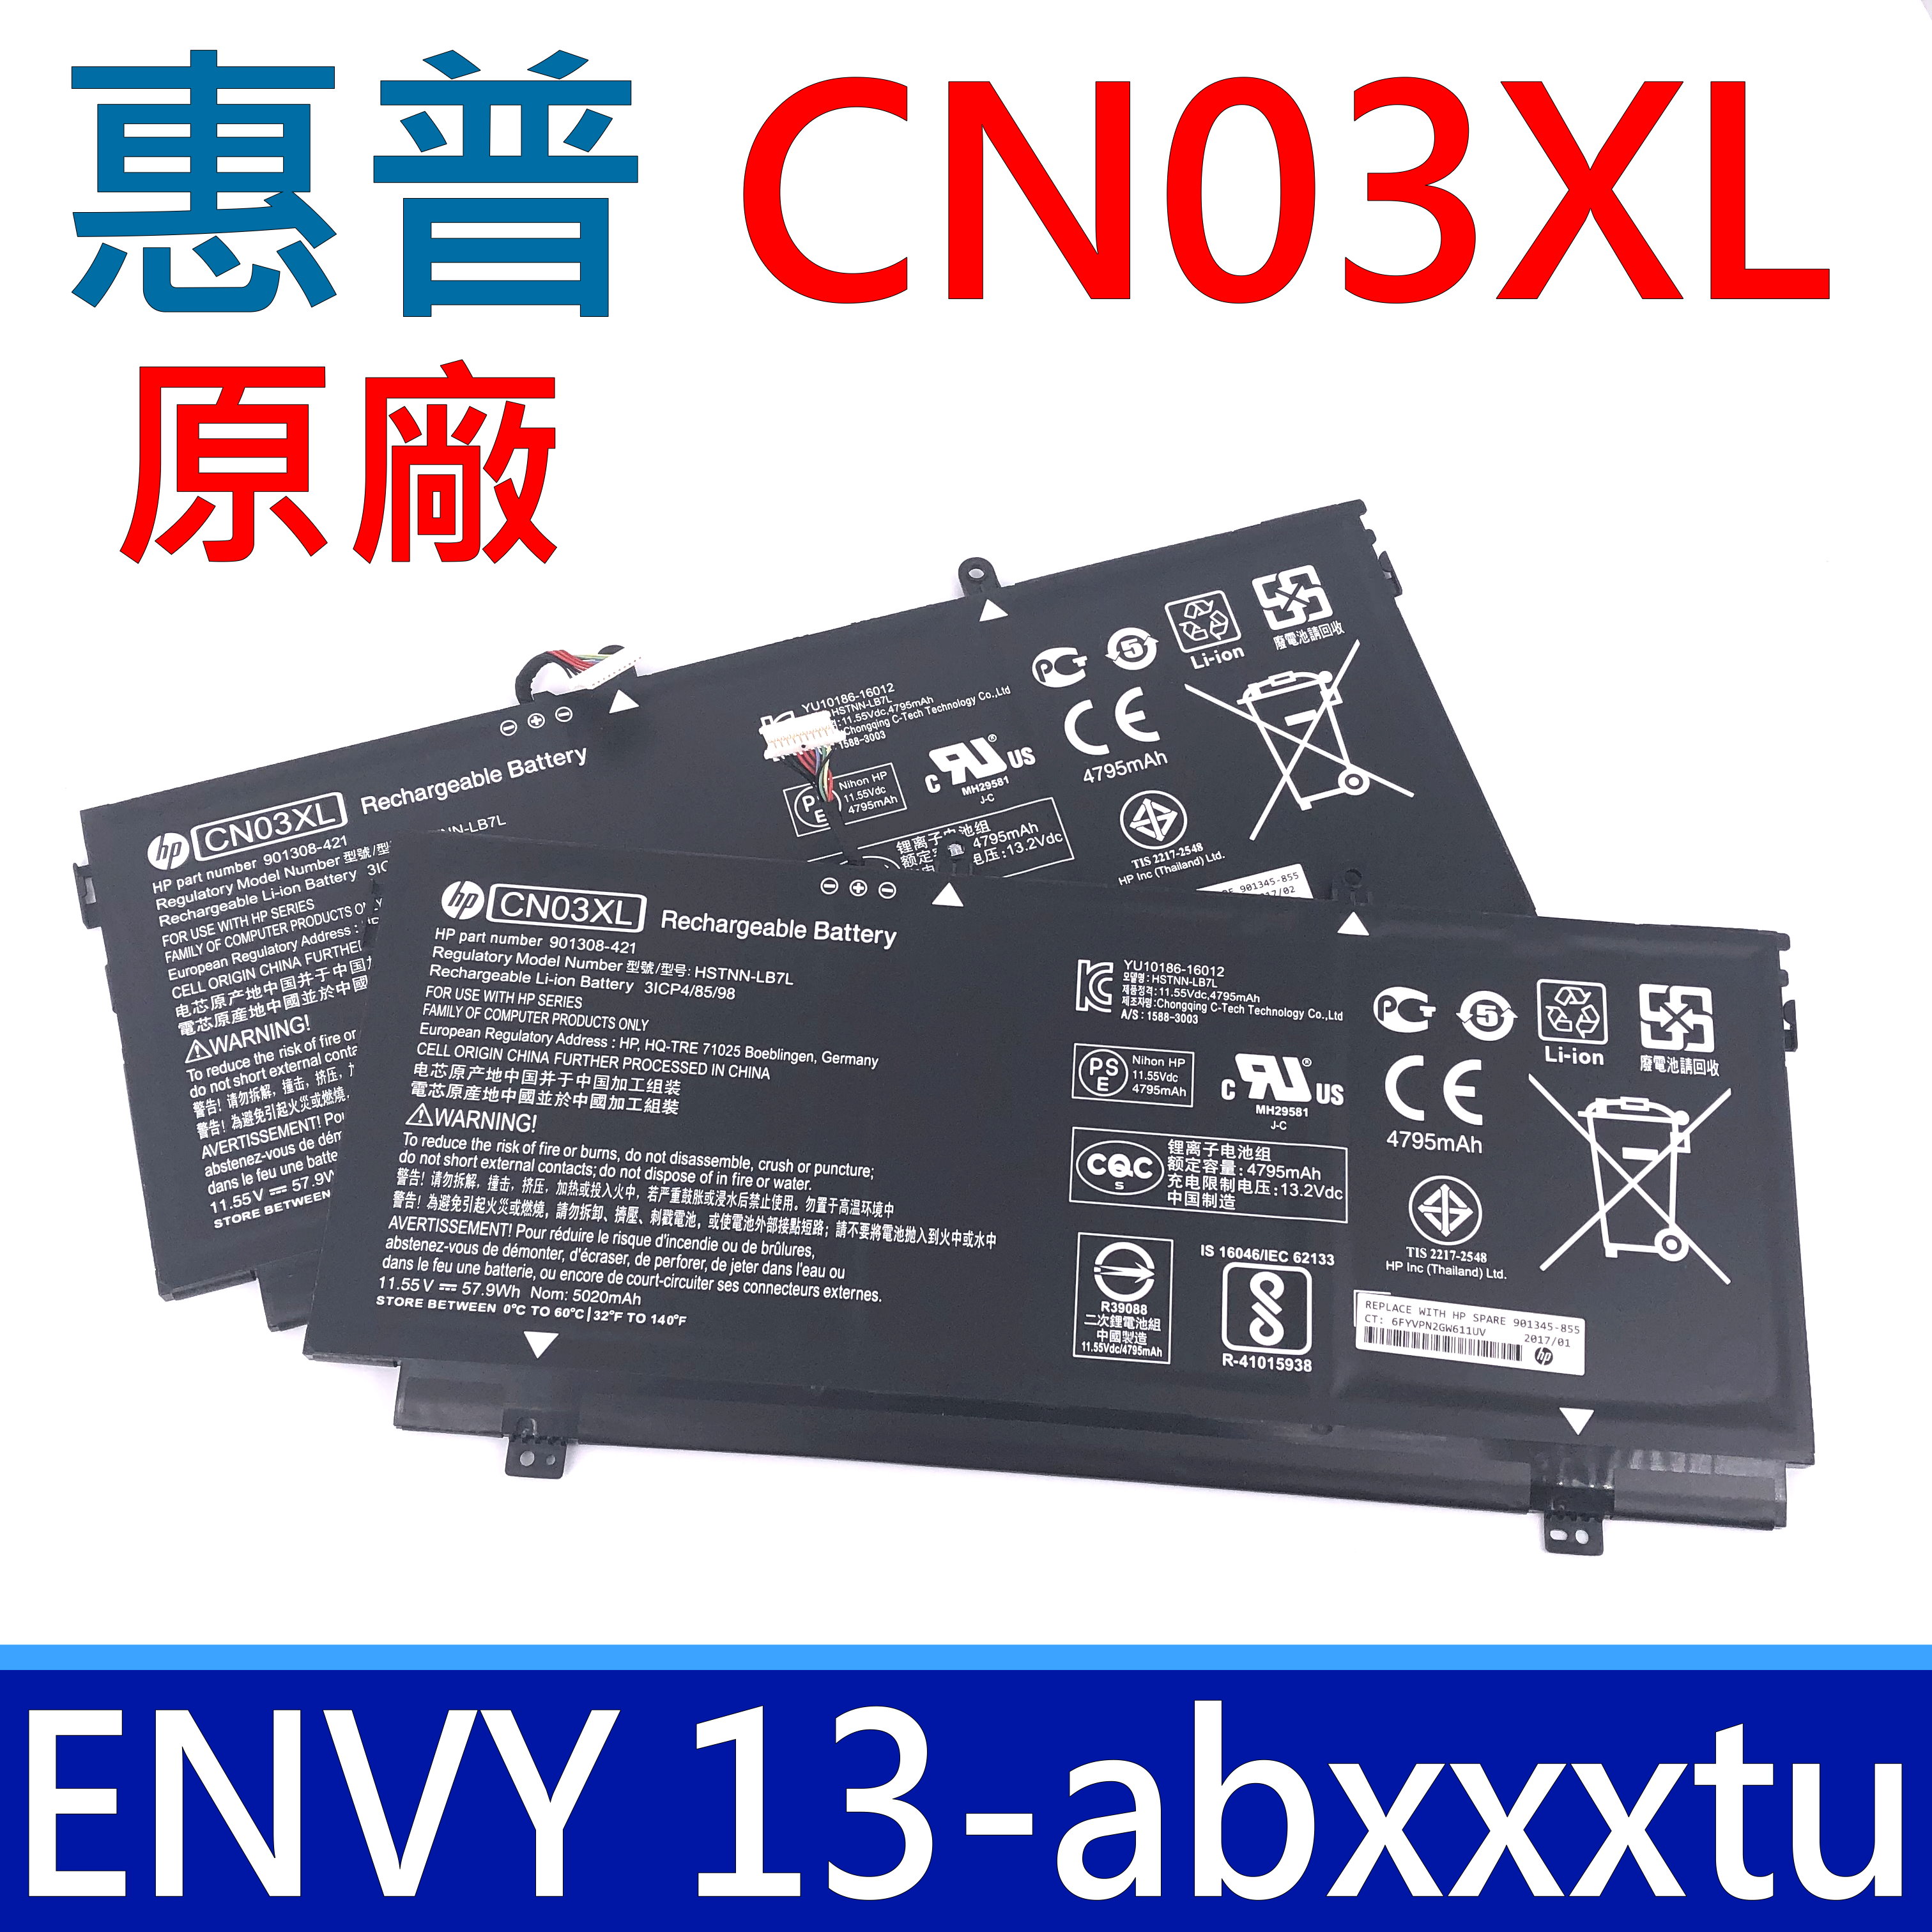 HP CN03XL 原廠電池 SH03XL Envy 13-ab029tu，13-ab047tu，13-ab050tu，13-ab026tu，13-ab，13-ab008tu，13-ab011tu，13-ab015tu，901345-855，HSTNN-LB7L，CN03057XL Envy 13-ab054tu，13-ab064tu，901308-421，13-ab019tu，13-ab020tu